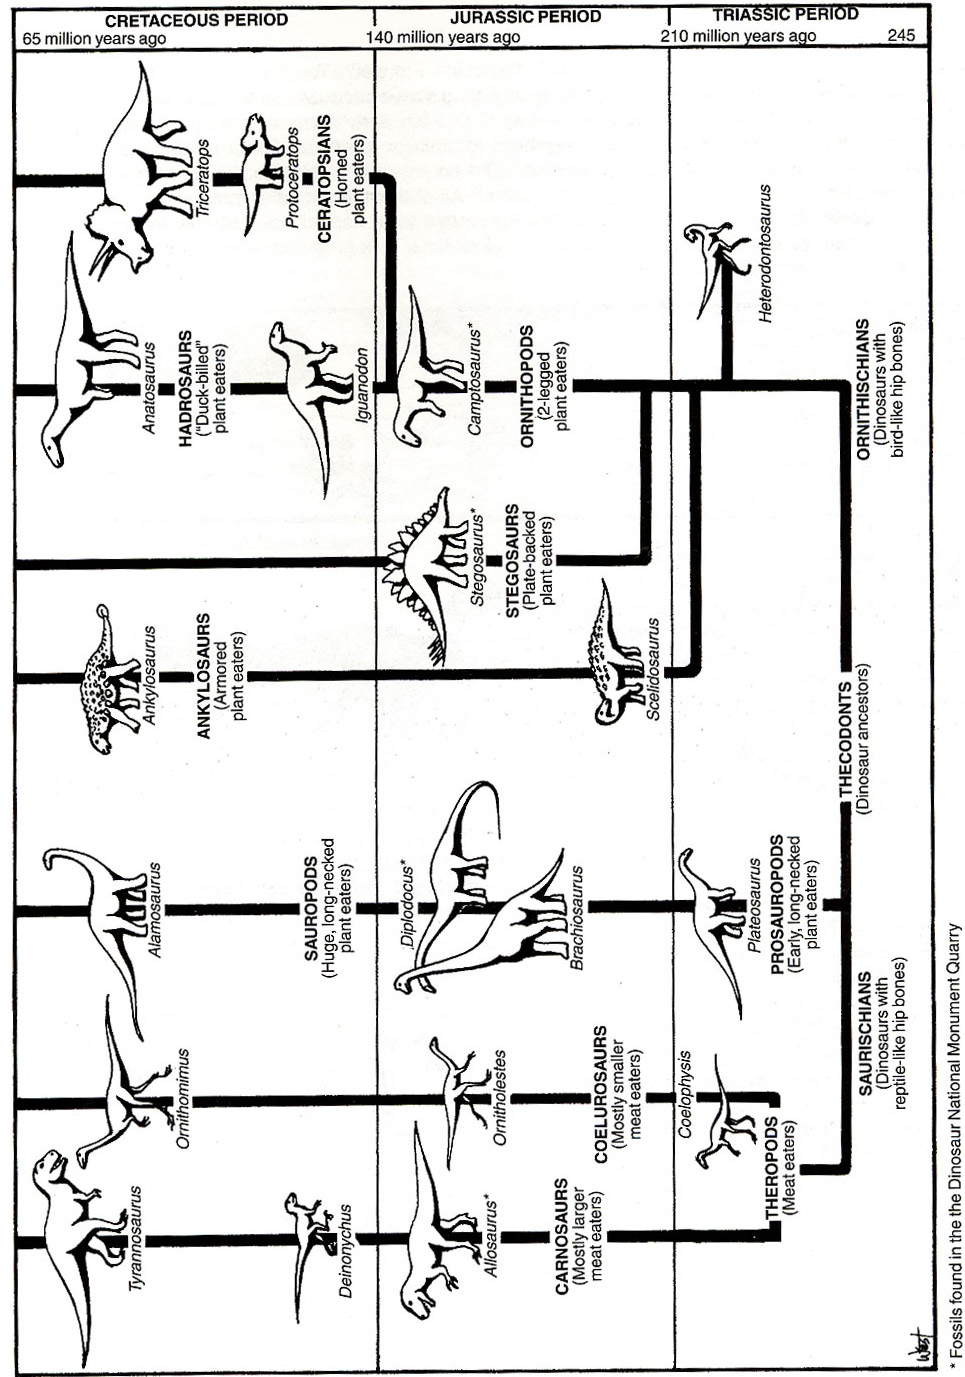 Full-Sized Dinosaur Family Tree